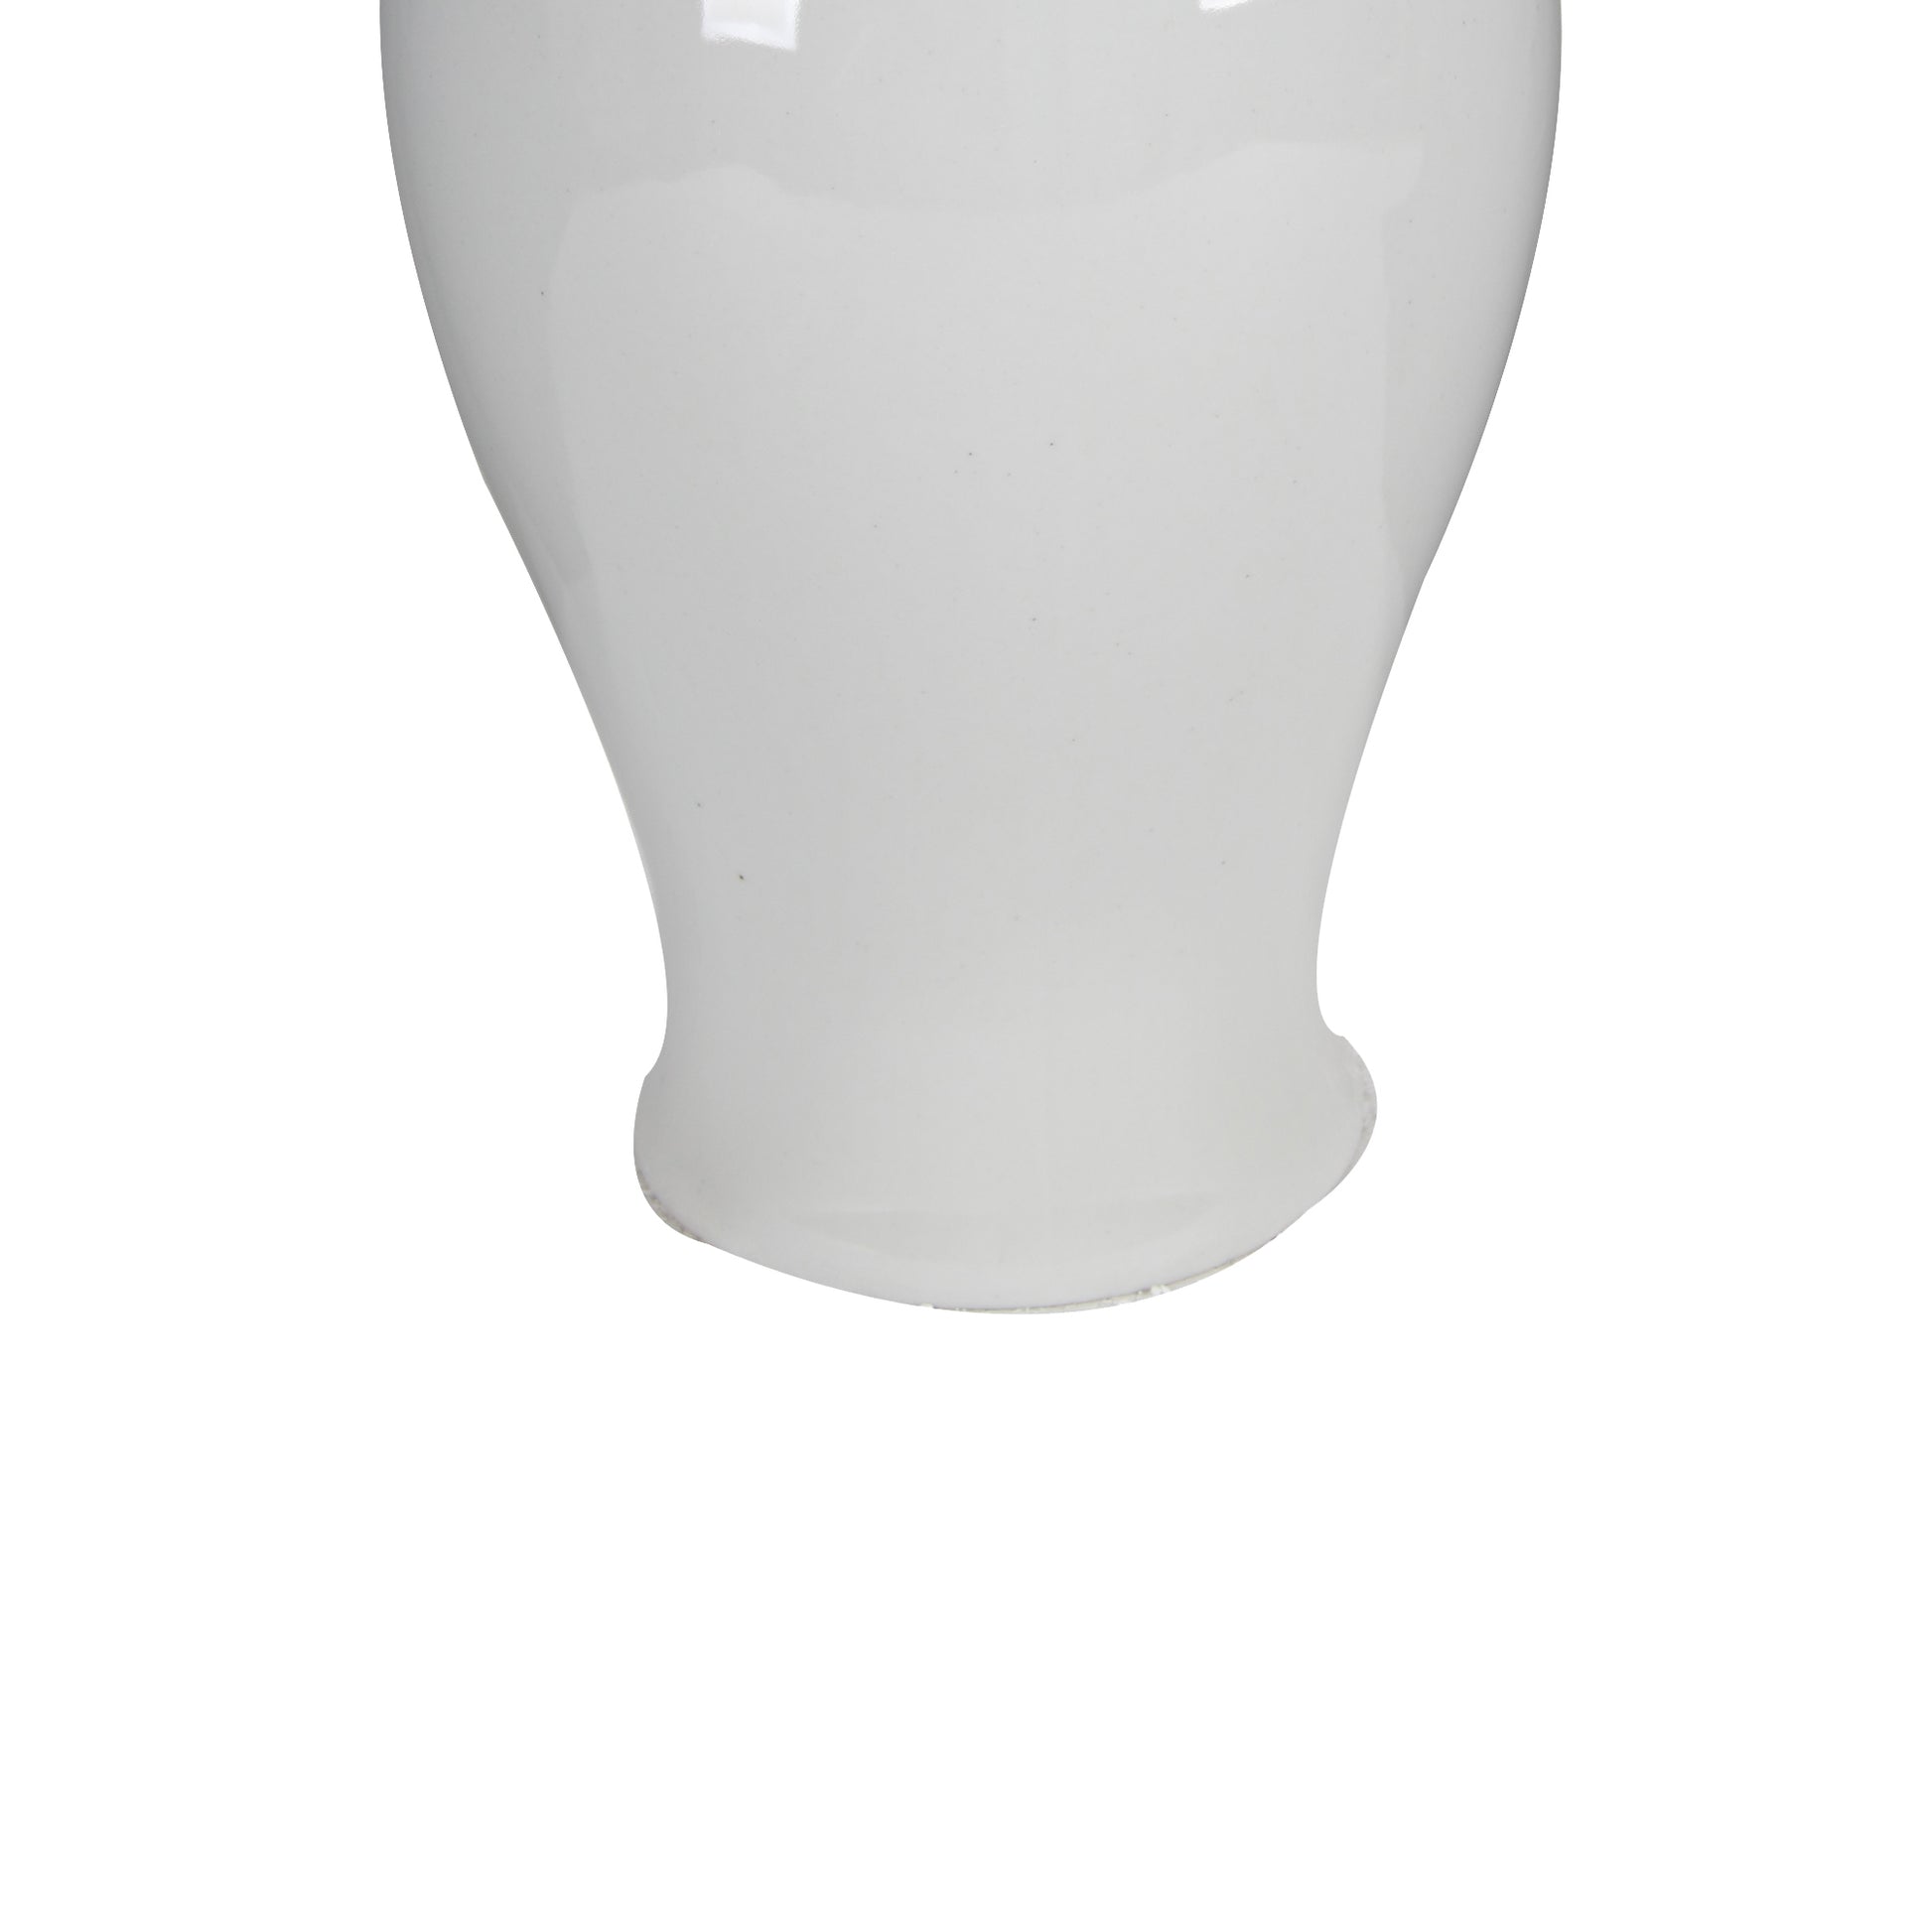 Decorative Porcelain Ginger Jar With Lidded Top -